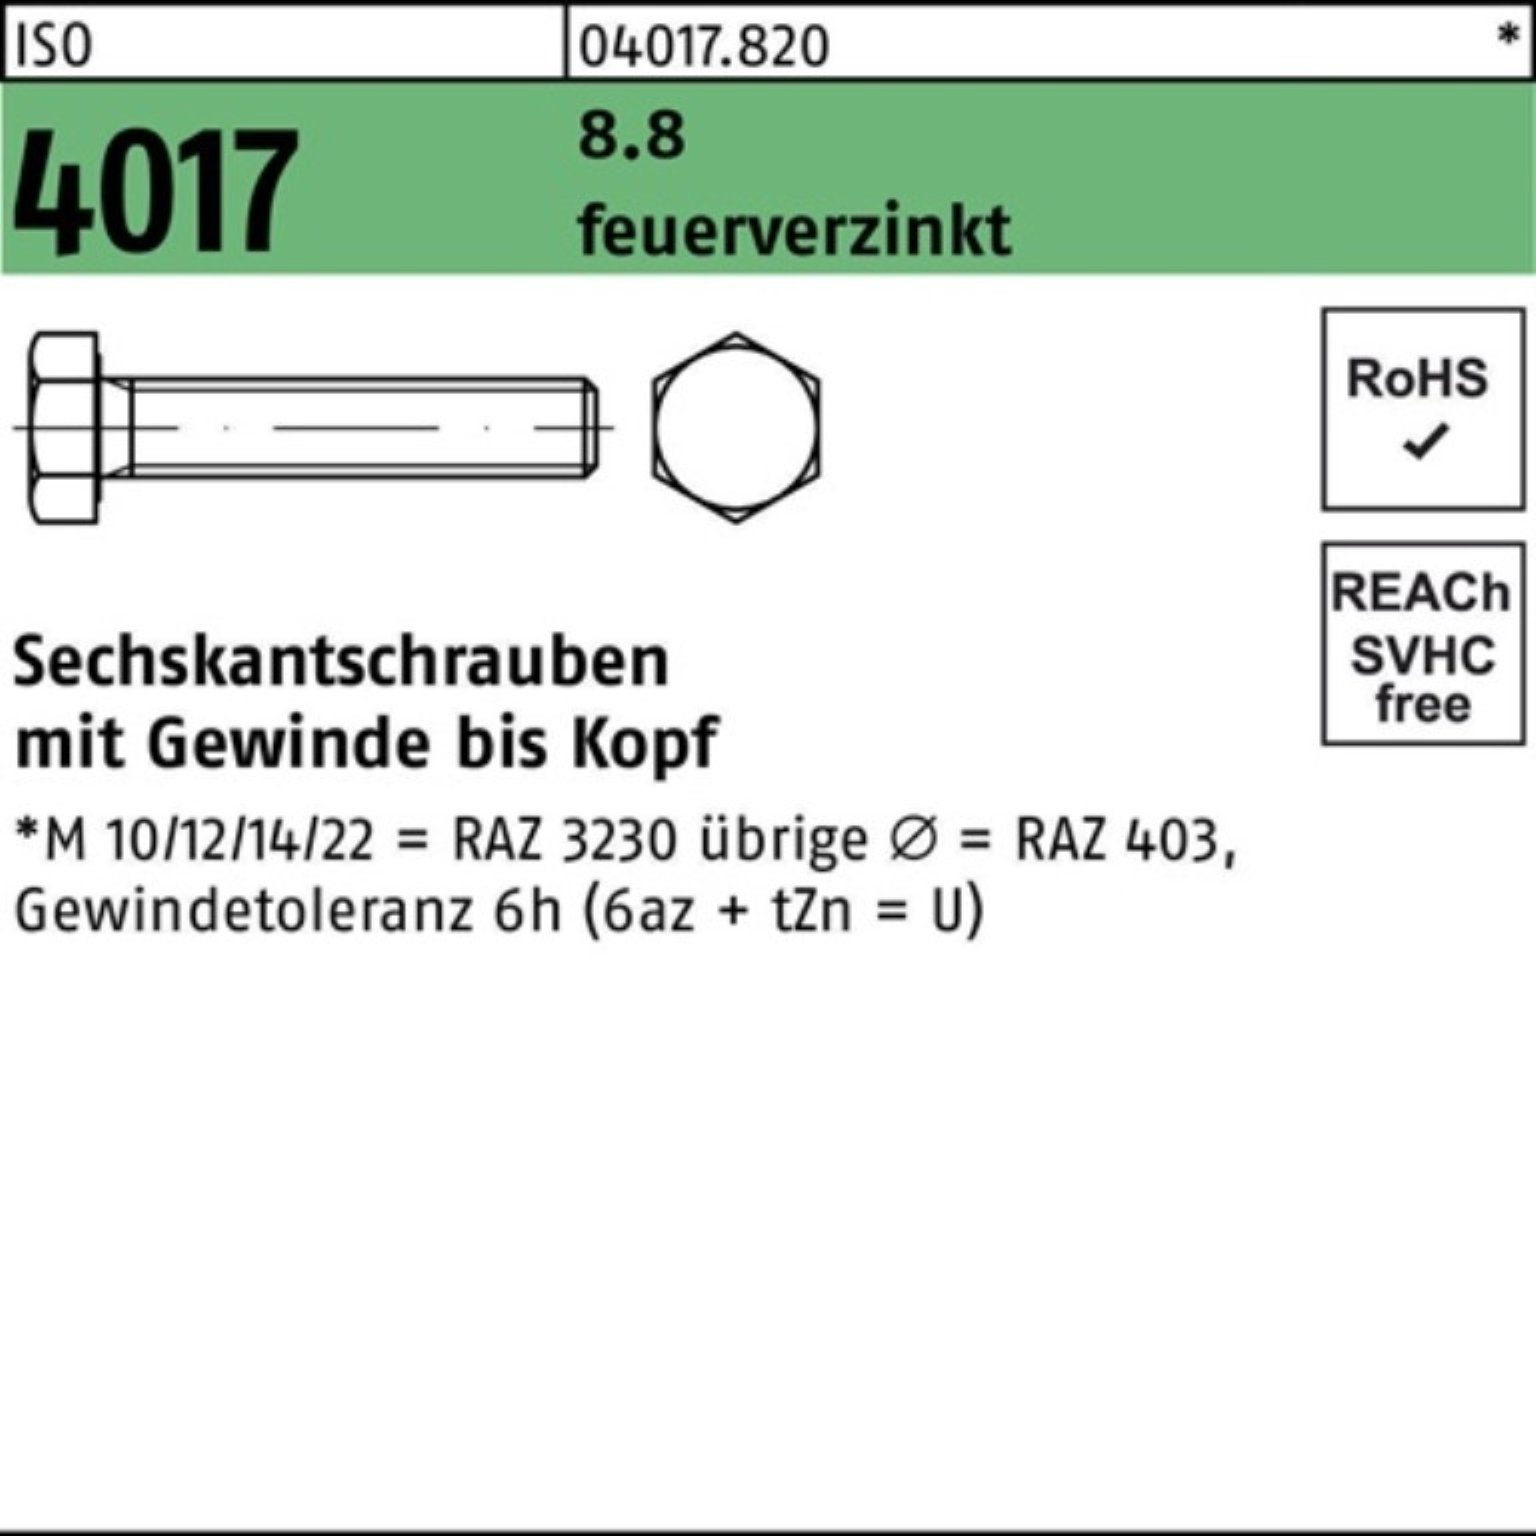 Bufab Sechskantschraube 4017 ISO Sechskantschraube 8.8 St feuerverz. 80 200er VG 200 Pack M8x